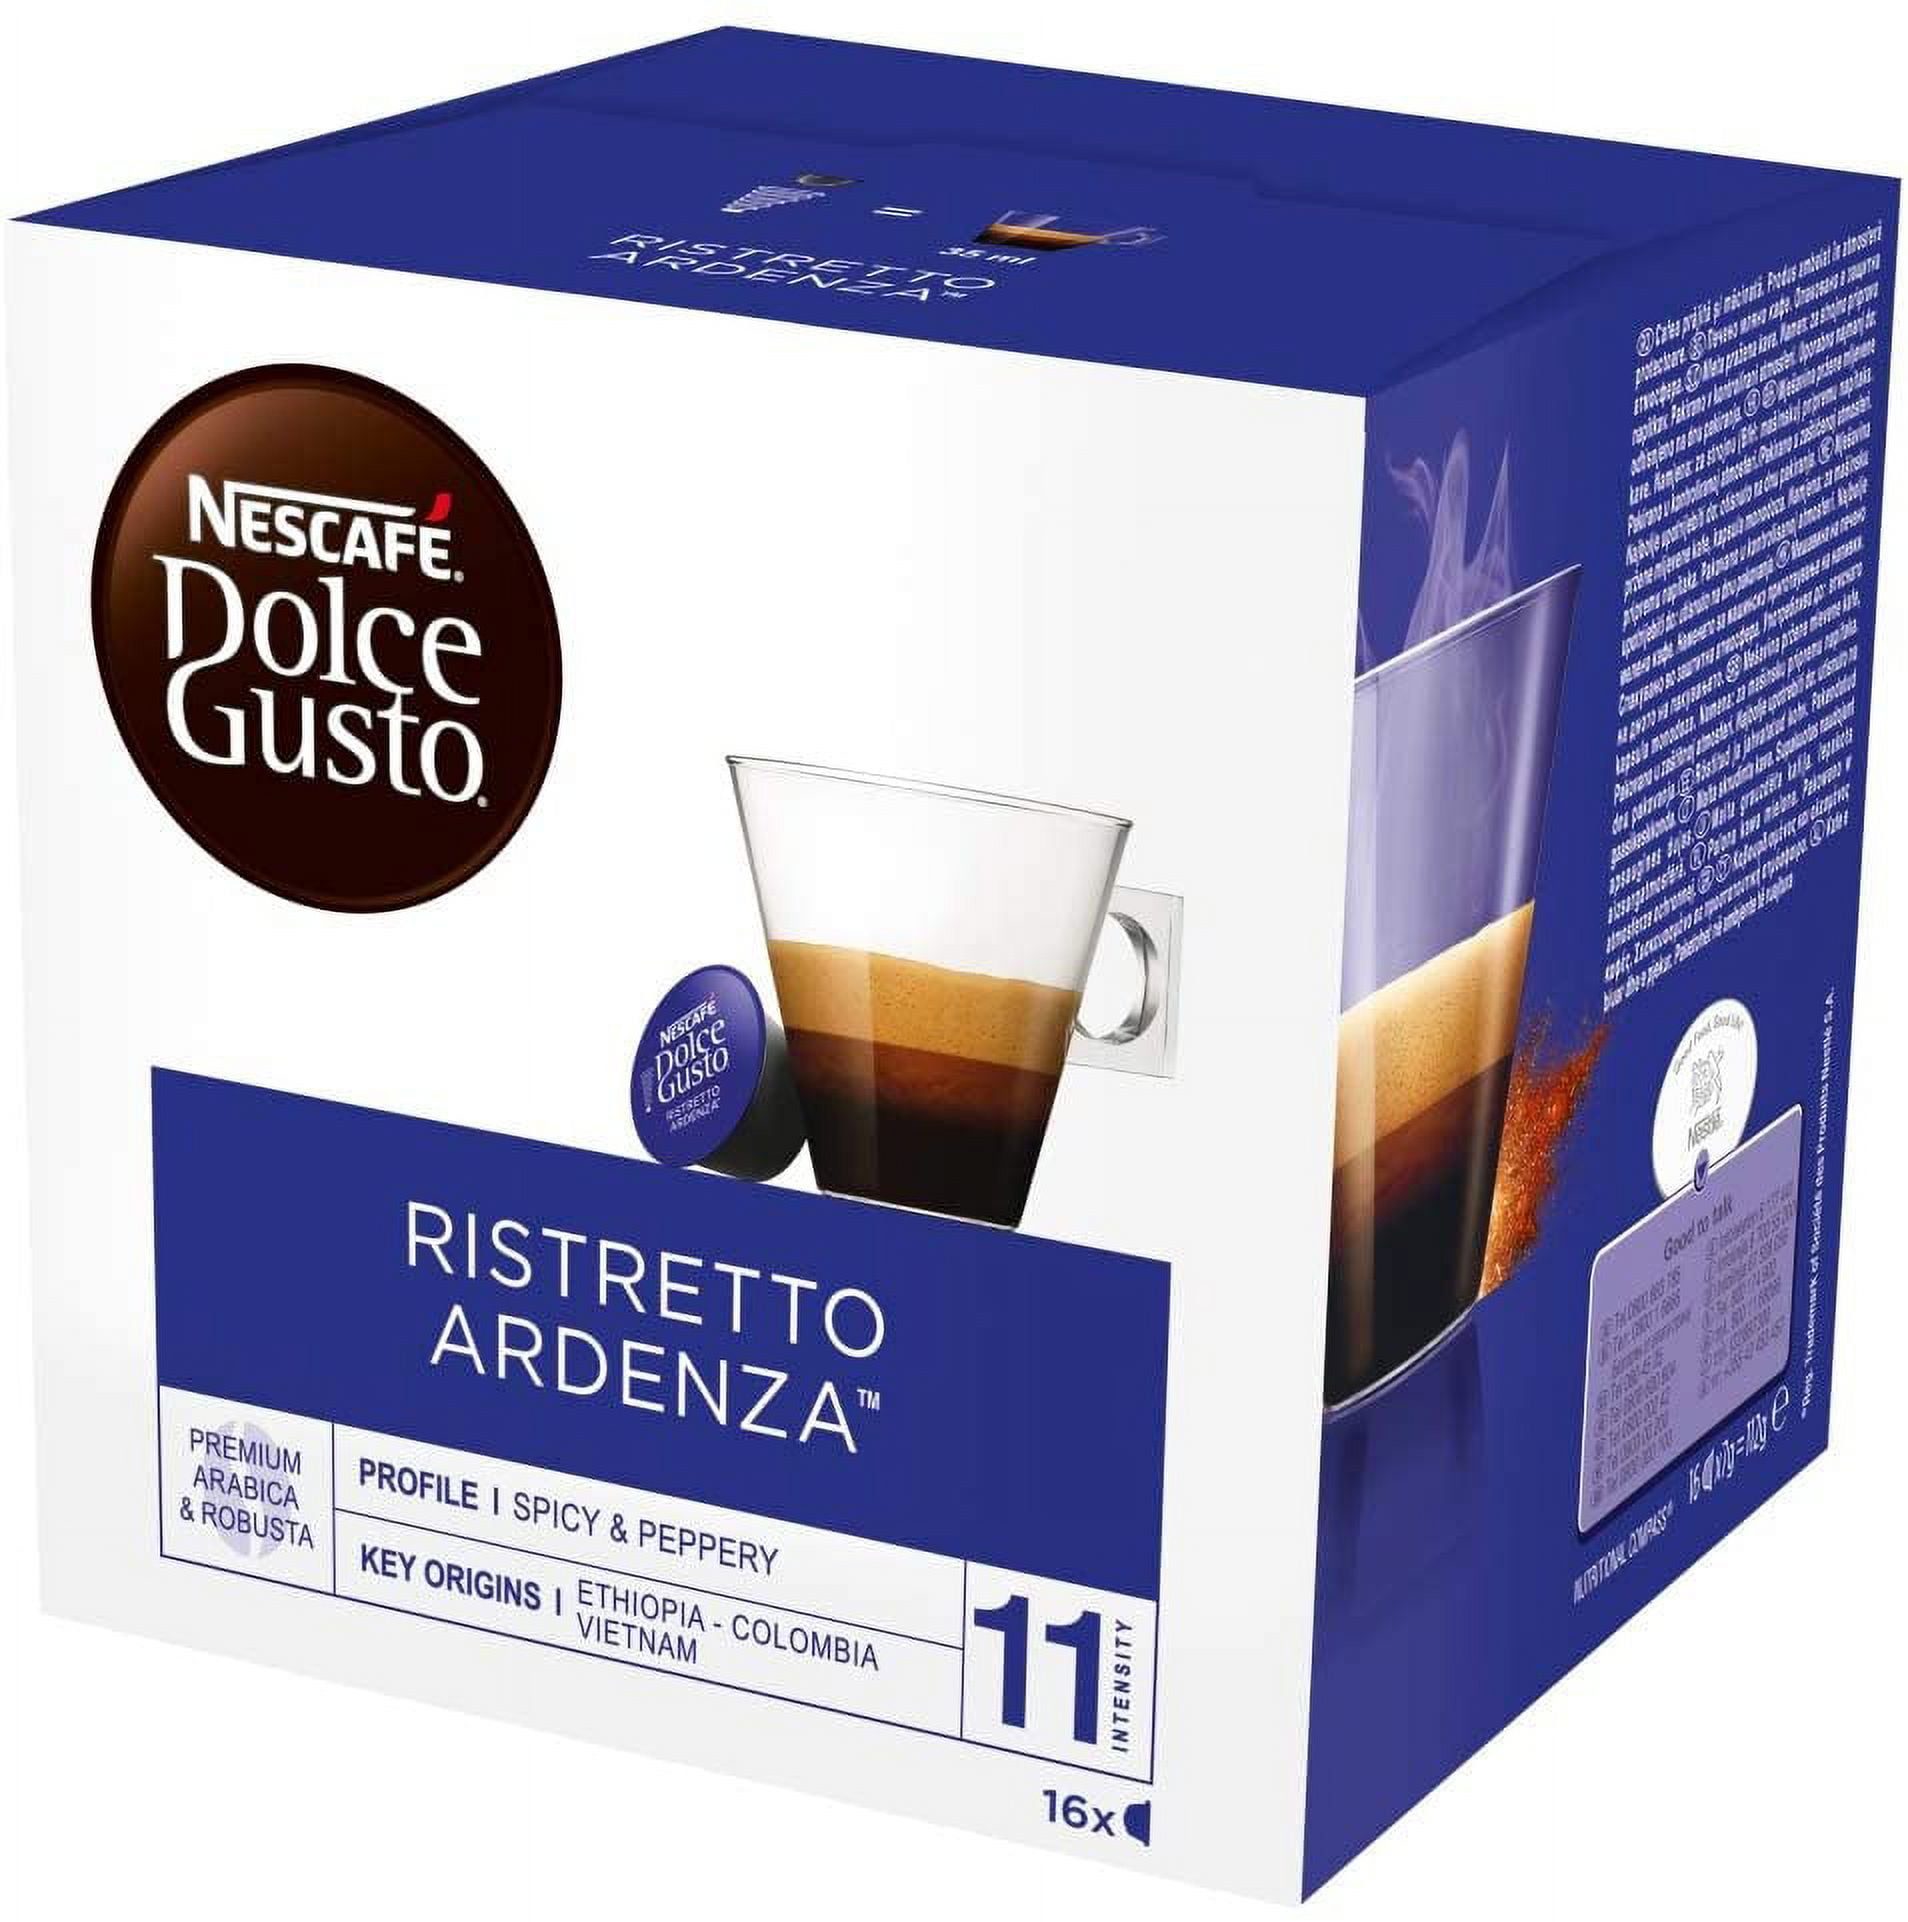 NESCAFÉ Dolce Gusto Espresso Intenso - x3 pack de 30 cápsulas